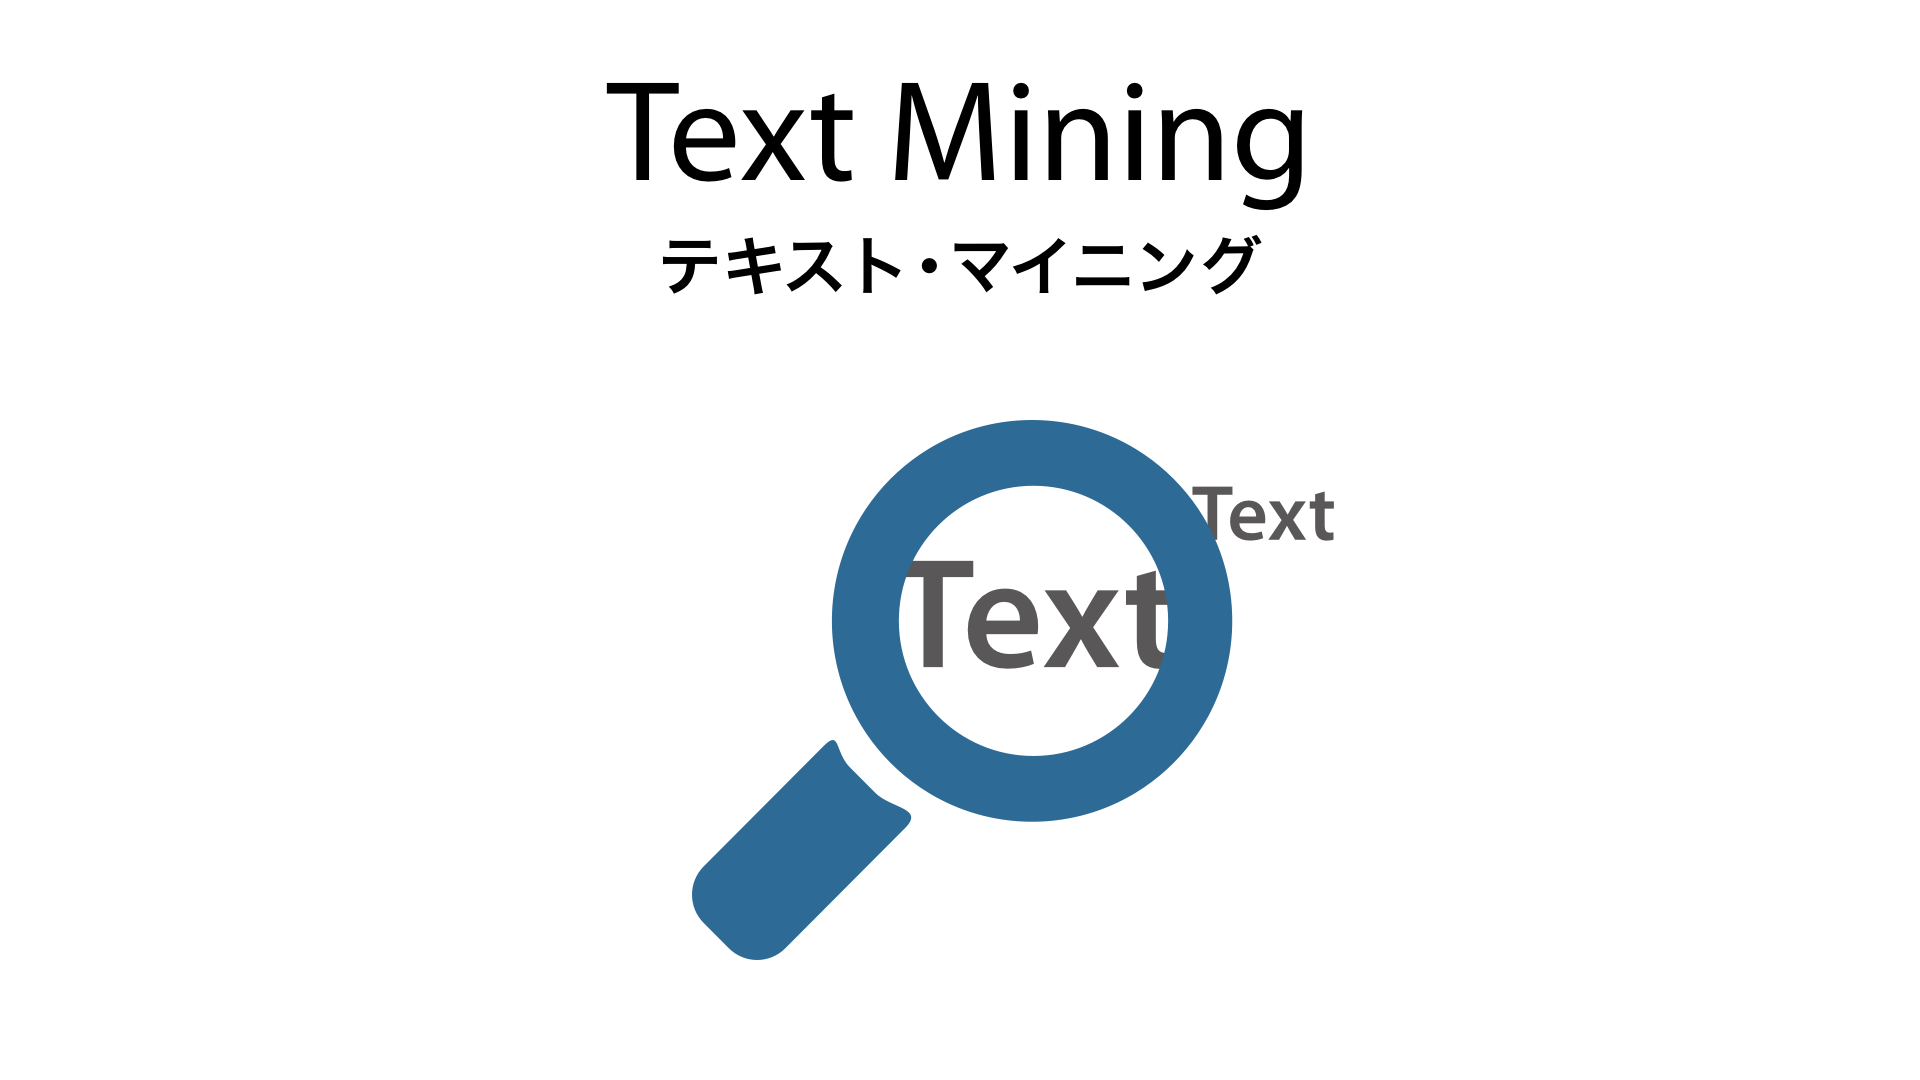 Text Mining картинки. Задачи text Mining. Text майнинг. Text Mining анализ текста.